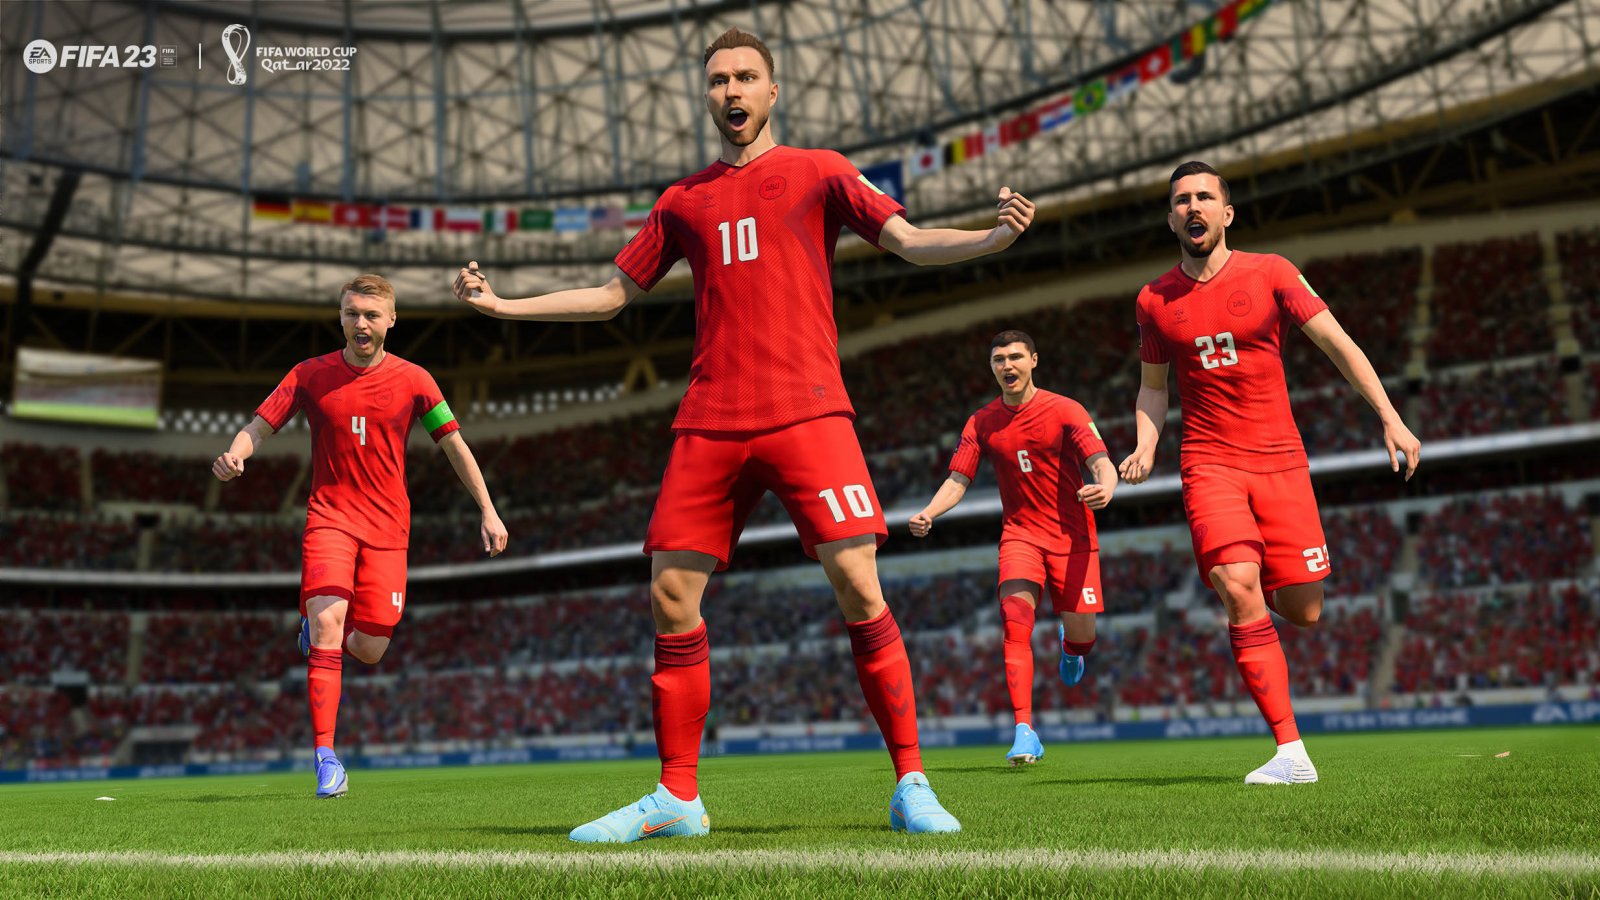 FIFA 23: Squadra della stagione Ultimate (TOTS) svelata, ecco i 25 giocatori migliori